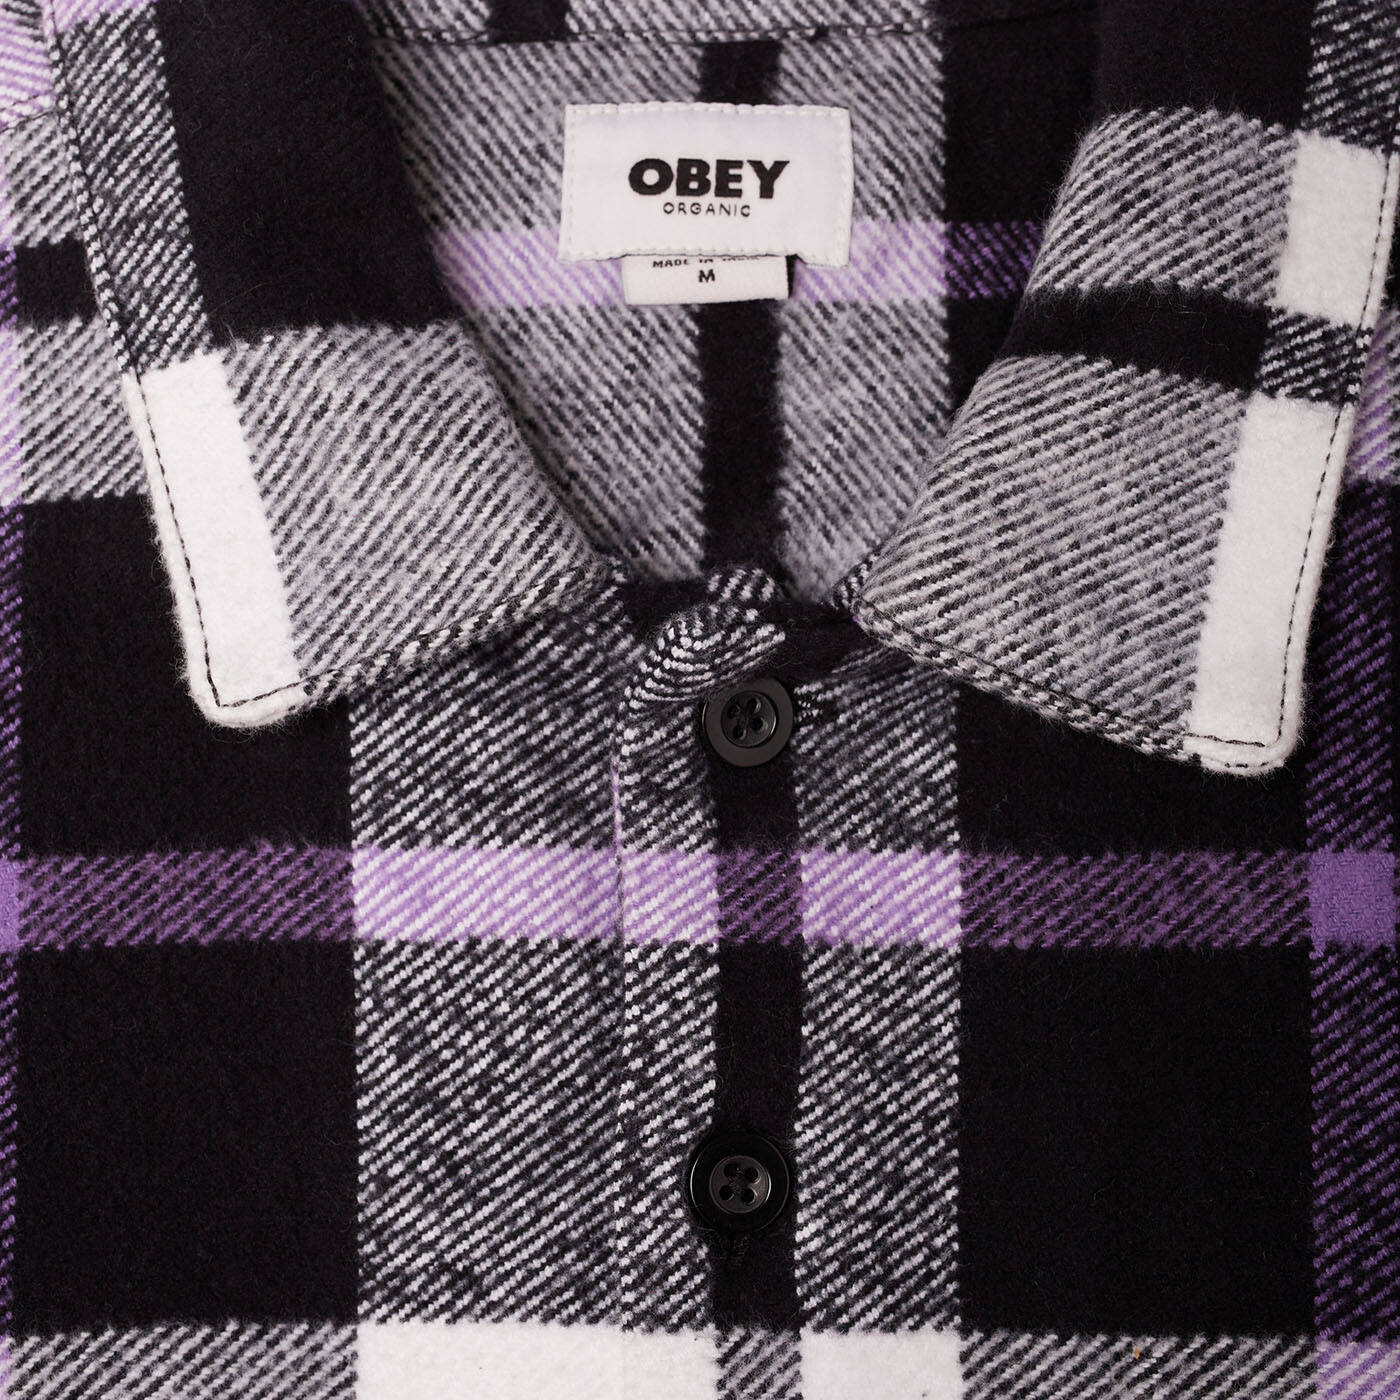 OBEY - Advert Woven Men's Shirt, Black Multi